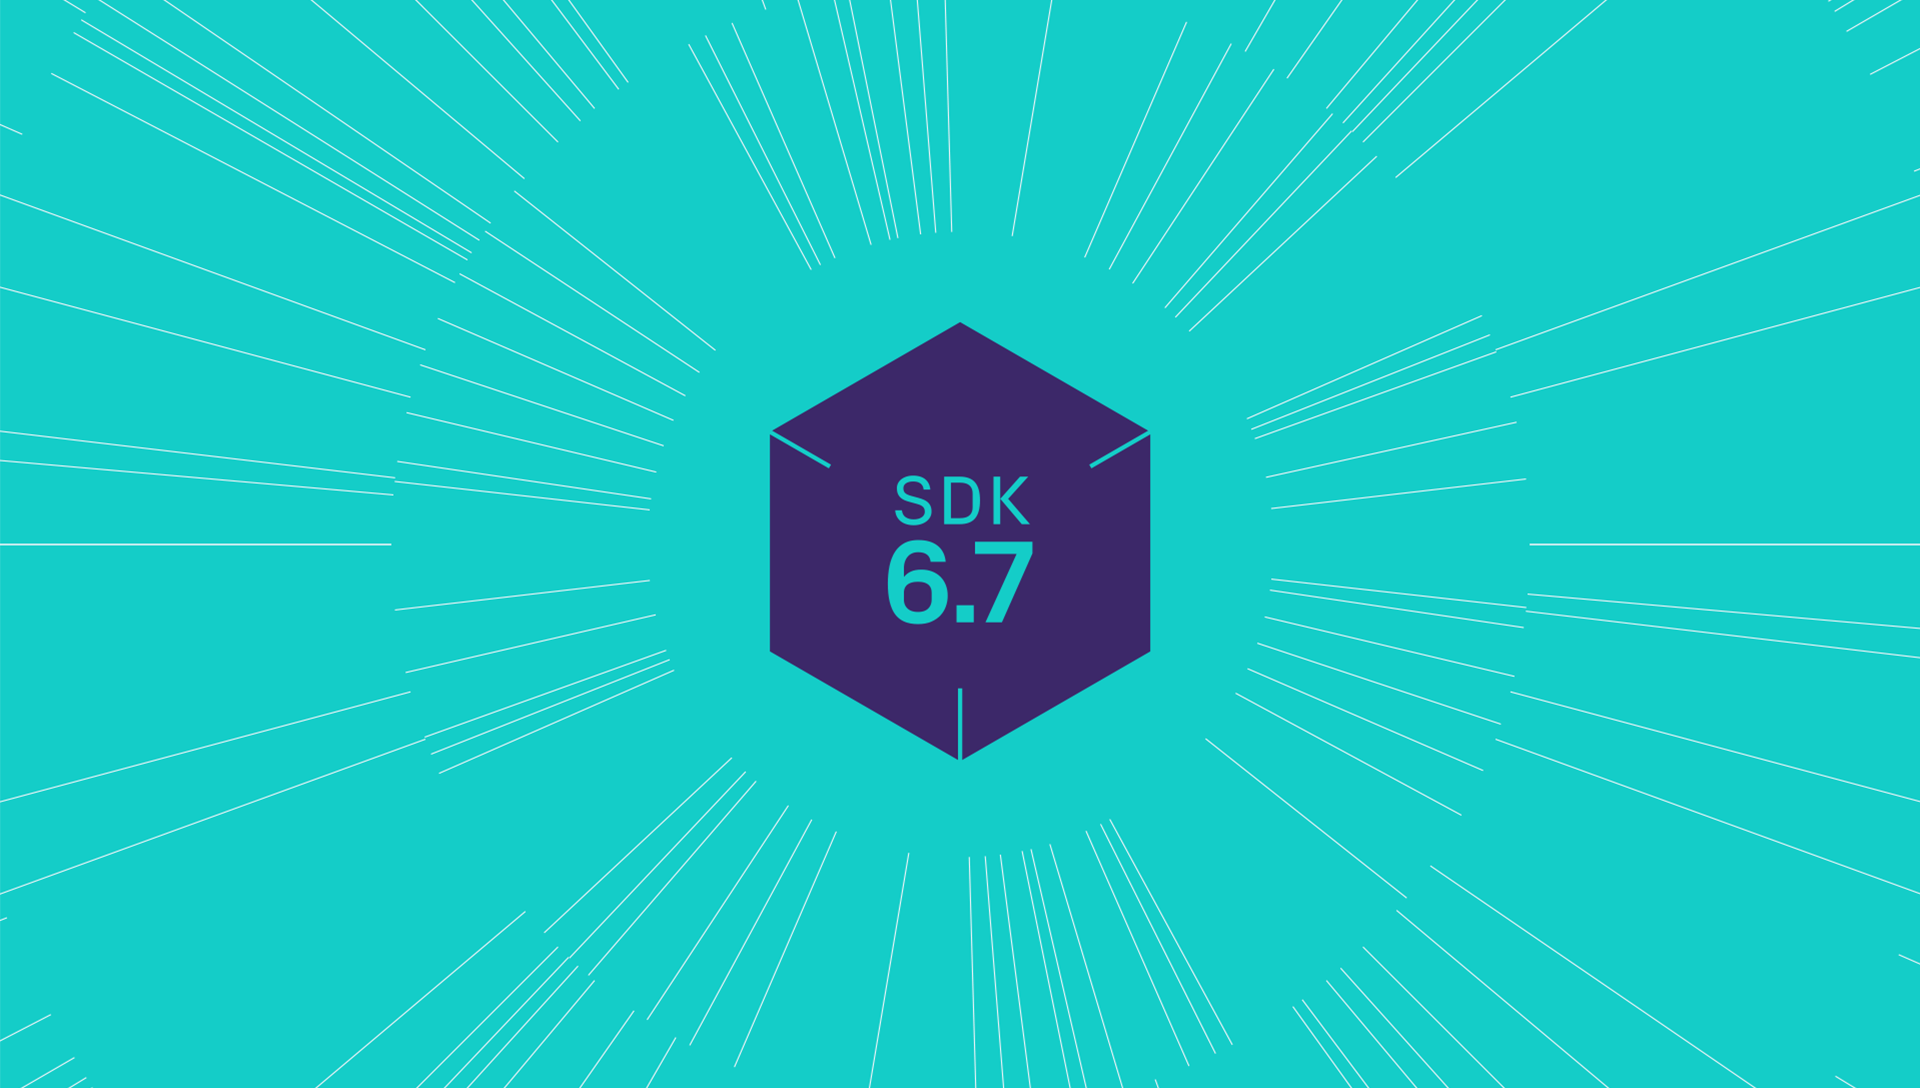 Introducing Vungle’s SDK 6.7